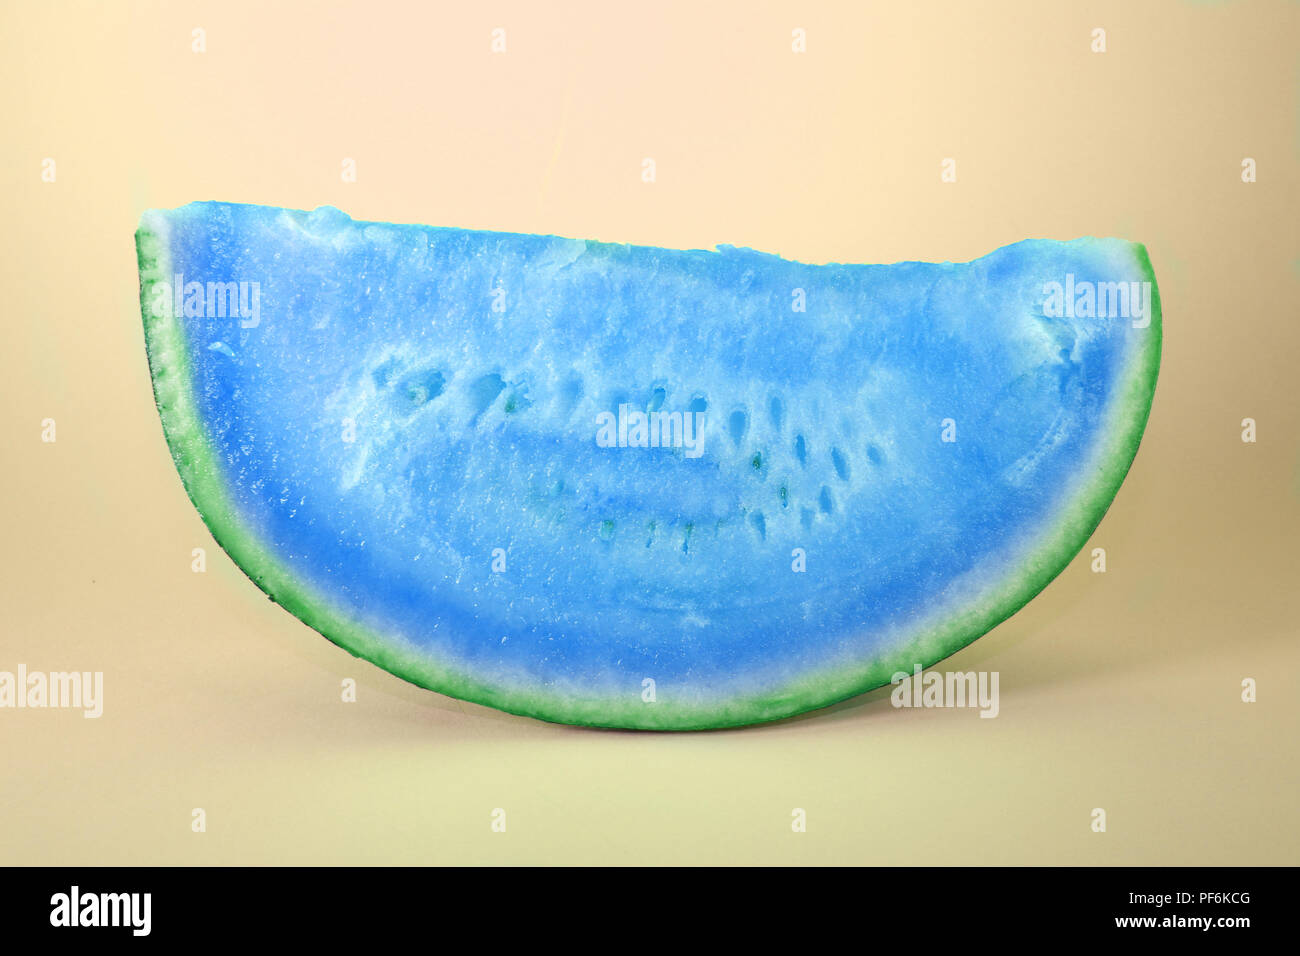 Blau Wassermelone Slice auf Studio Hintergrund. Blaue Früchte  Stockfotografie - Alamy